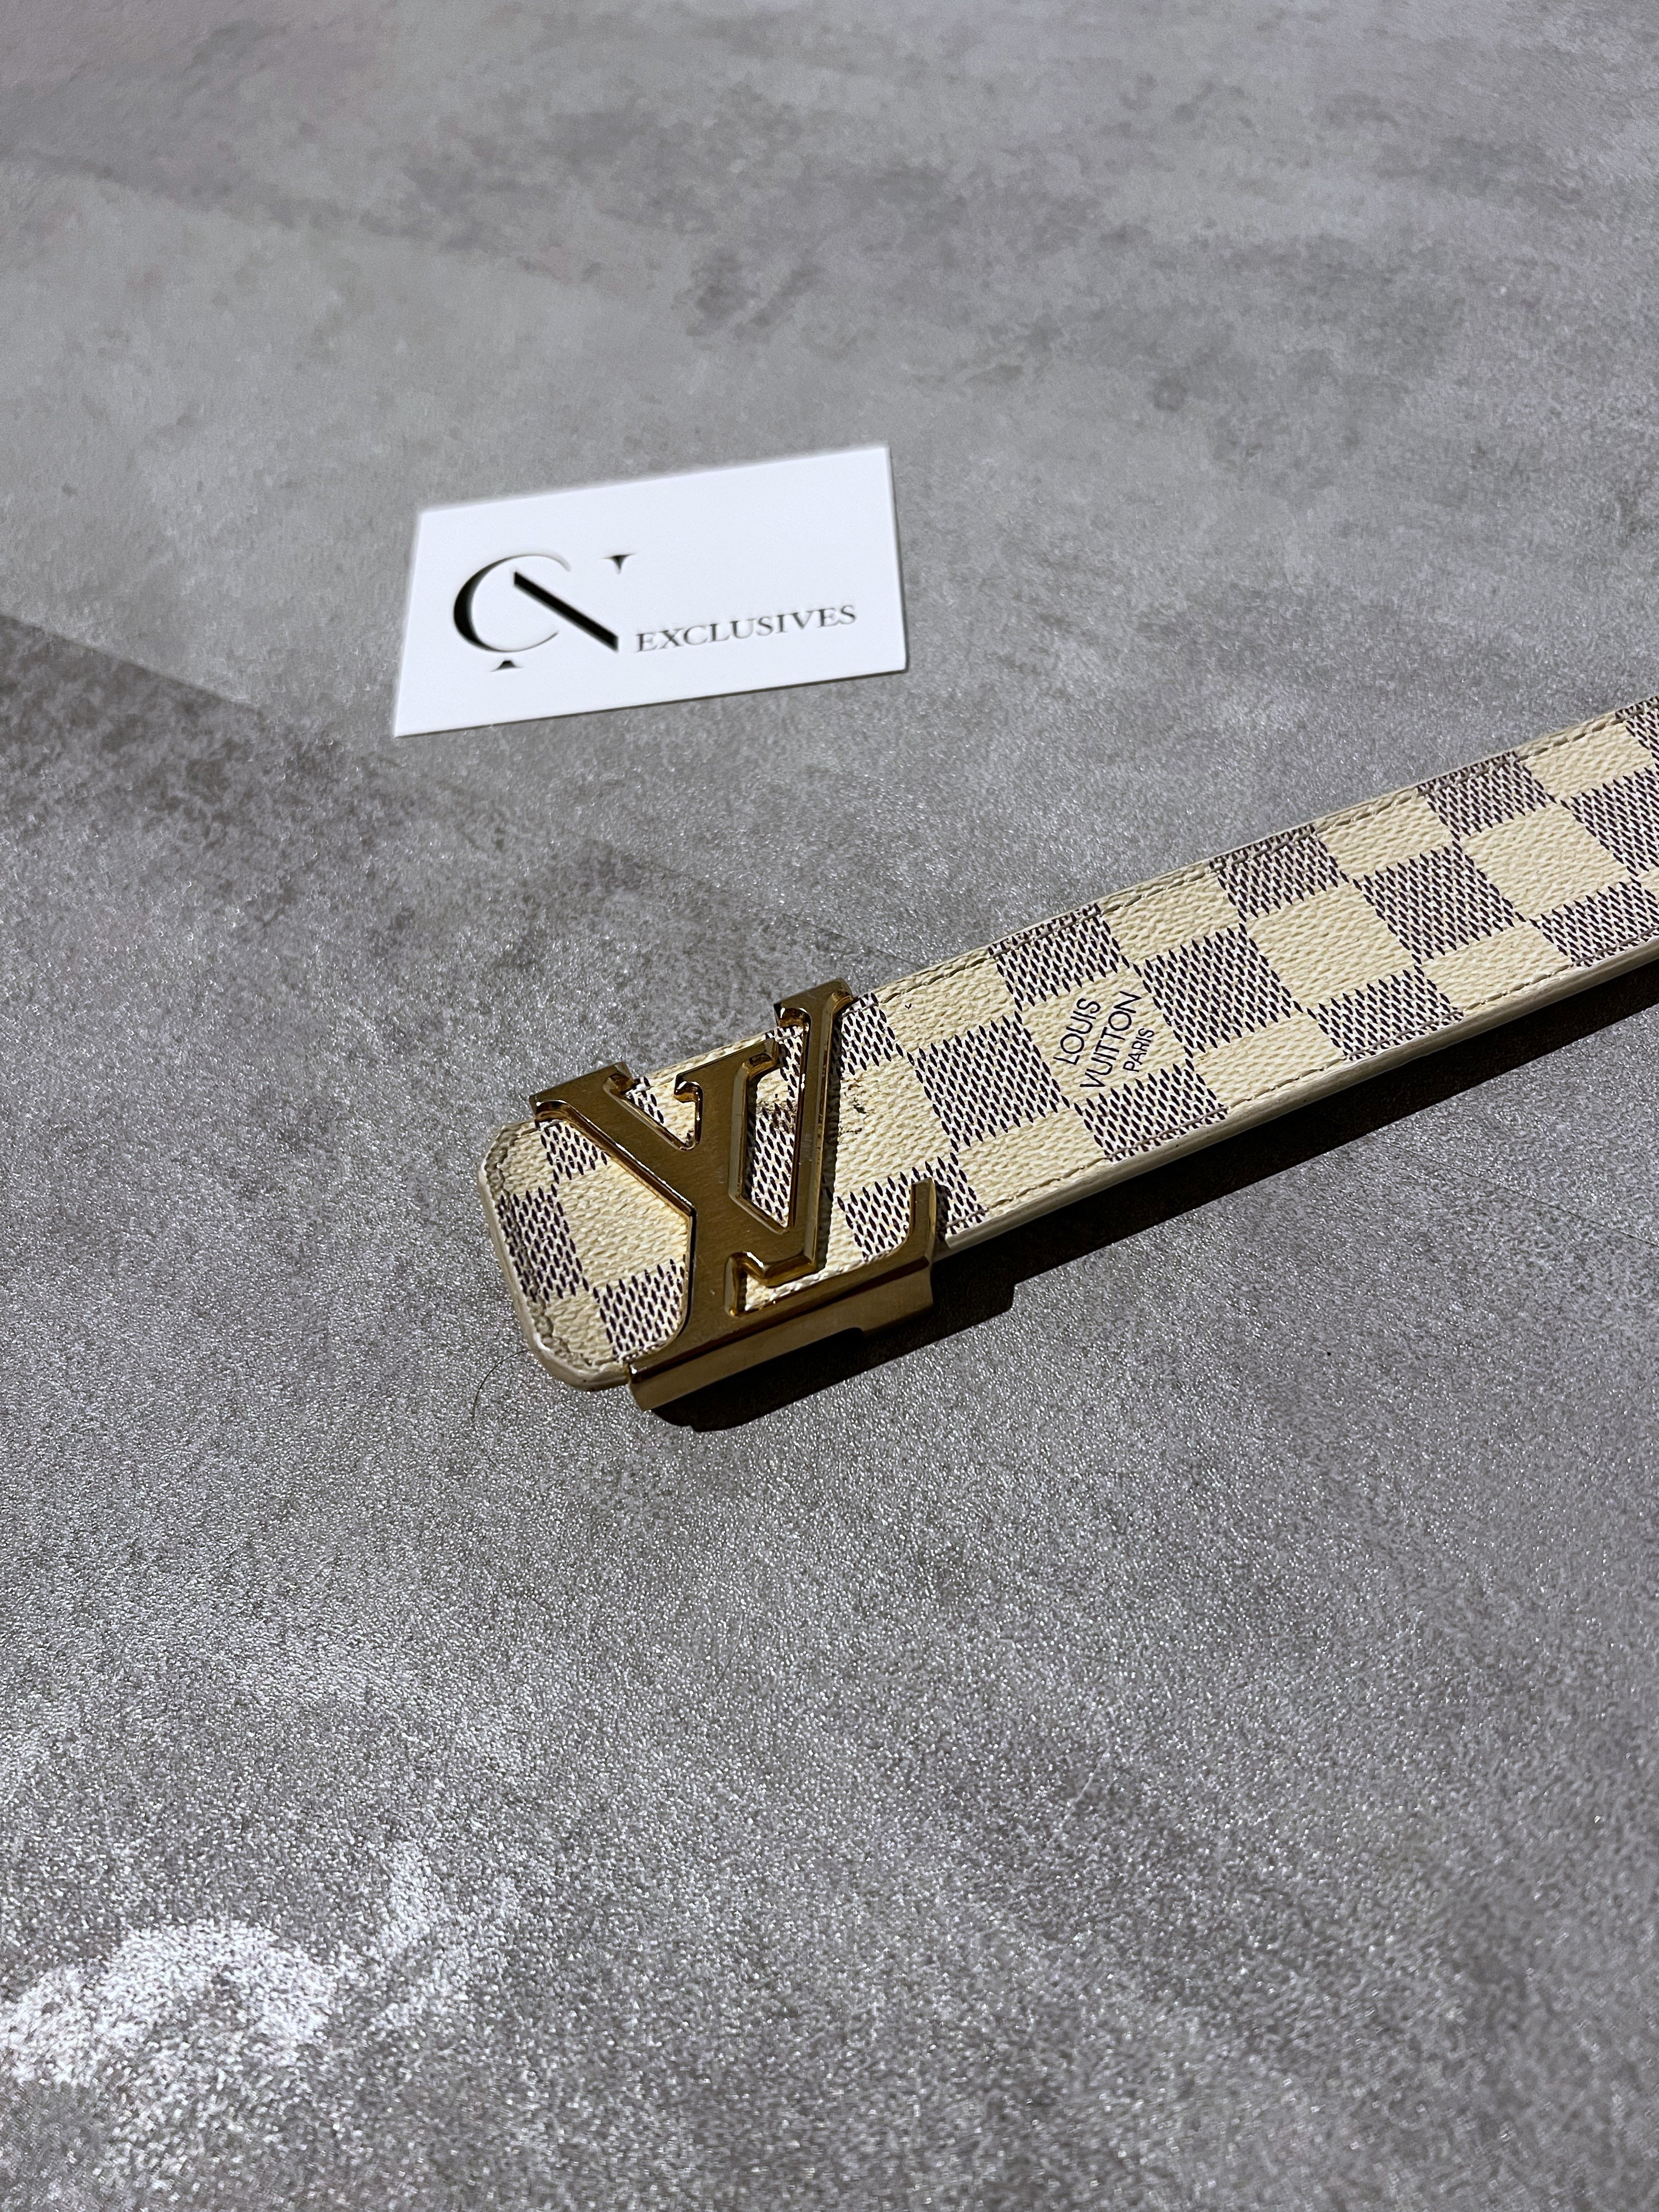 Louis Vuitton Damier Graphite Canvas Plate Reversible Belt Size 85